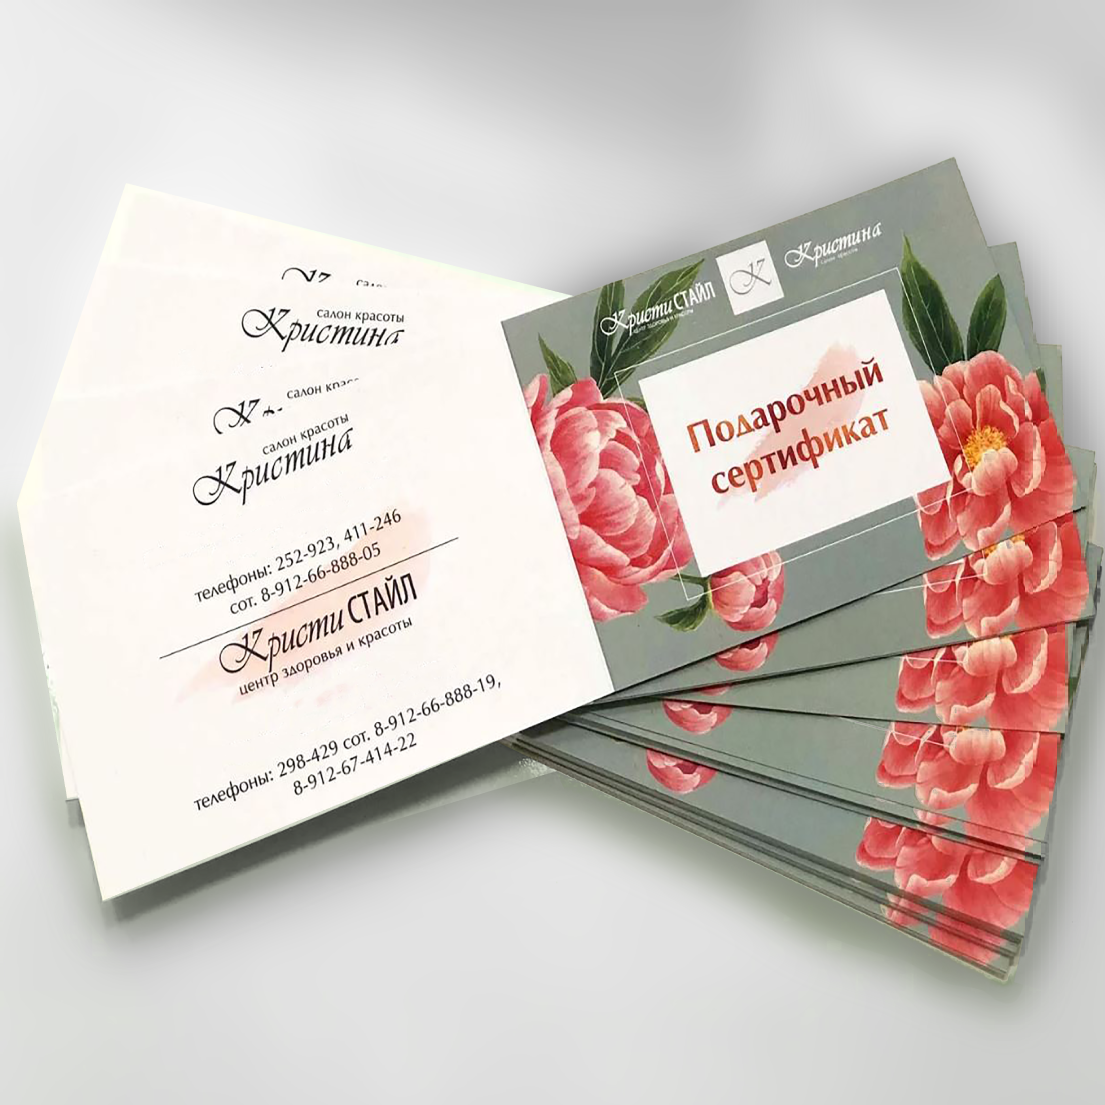 Подарочные сертификаты разных форматов в виде буклетов для вложения в конверт